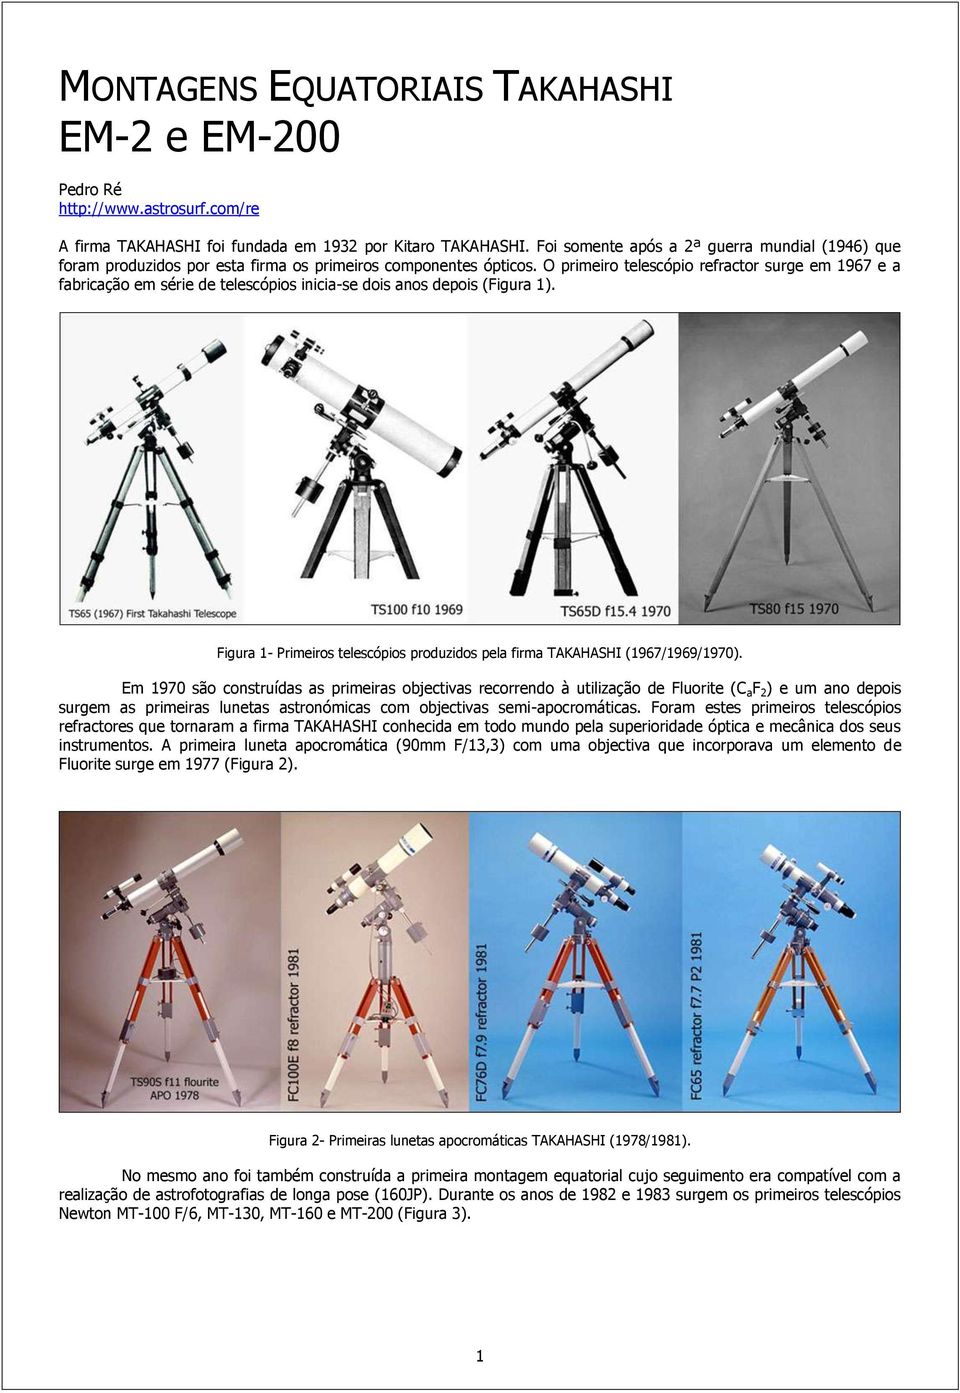 O primeiro telescópio refractor surge em 1967 e a fabricação em série de telescópios inicia-se dois anos depois (Figura 1).